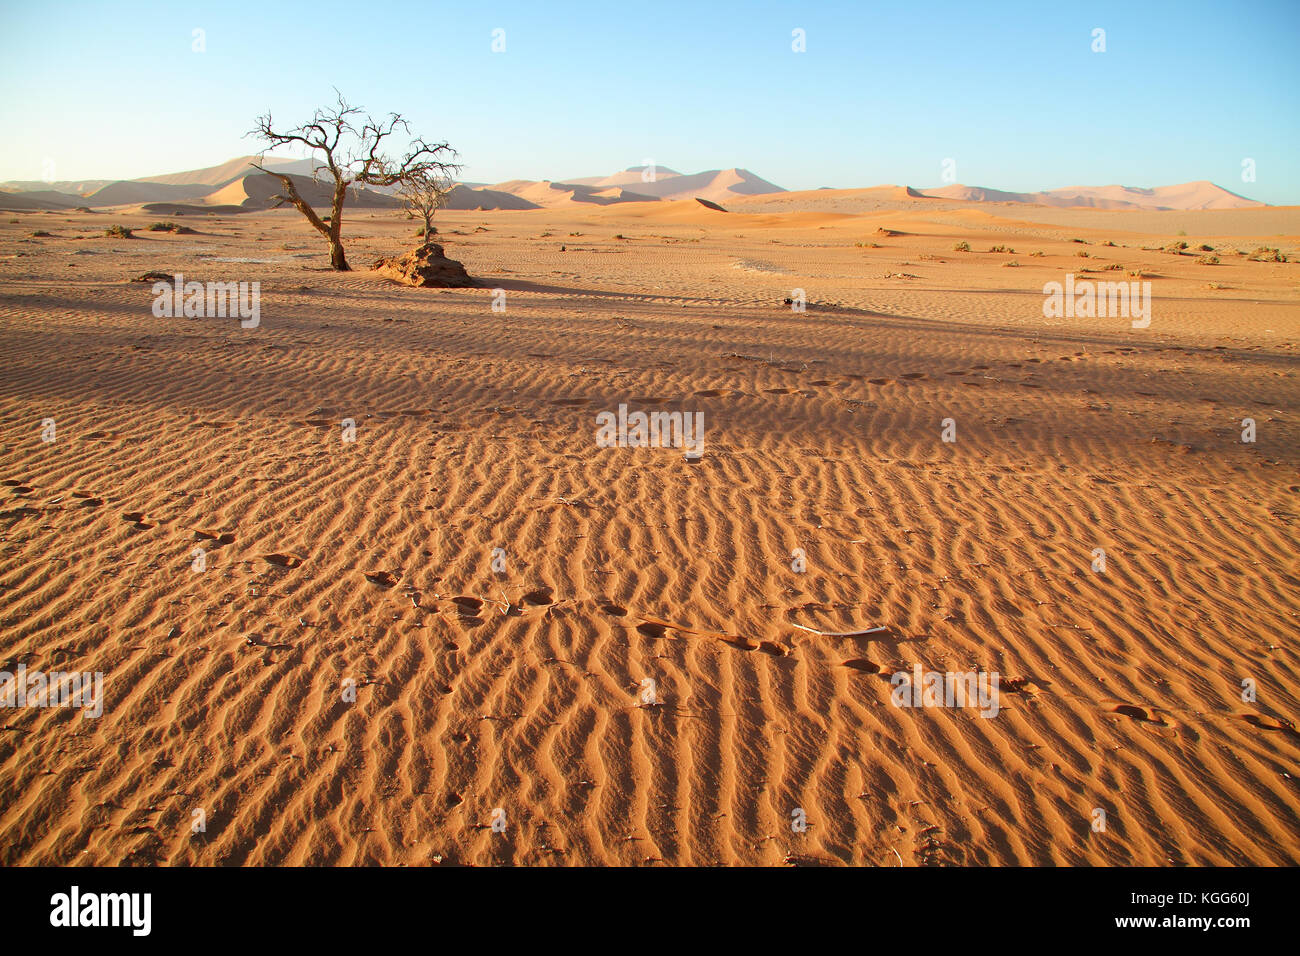 Paysage désertique de sossusvlei, le parc national namib naufluft, désert du namib, Namibie. Banque D'Images